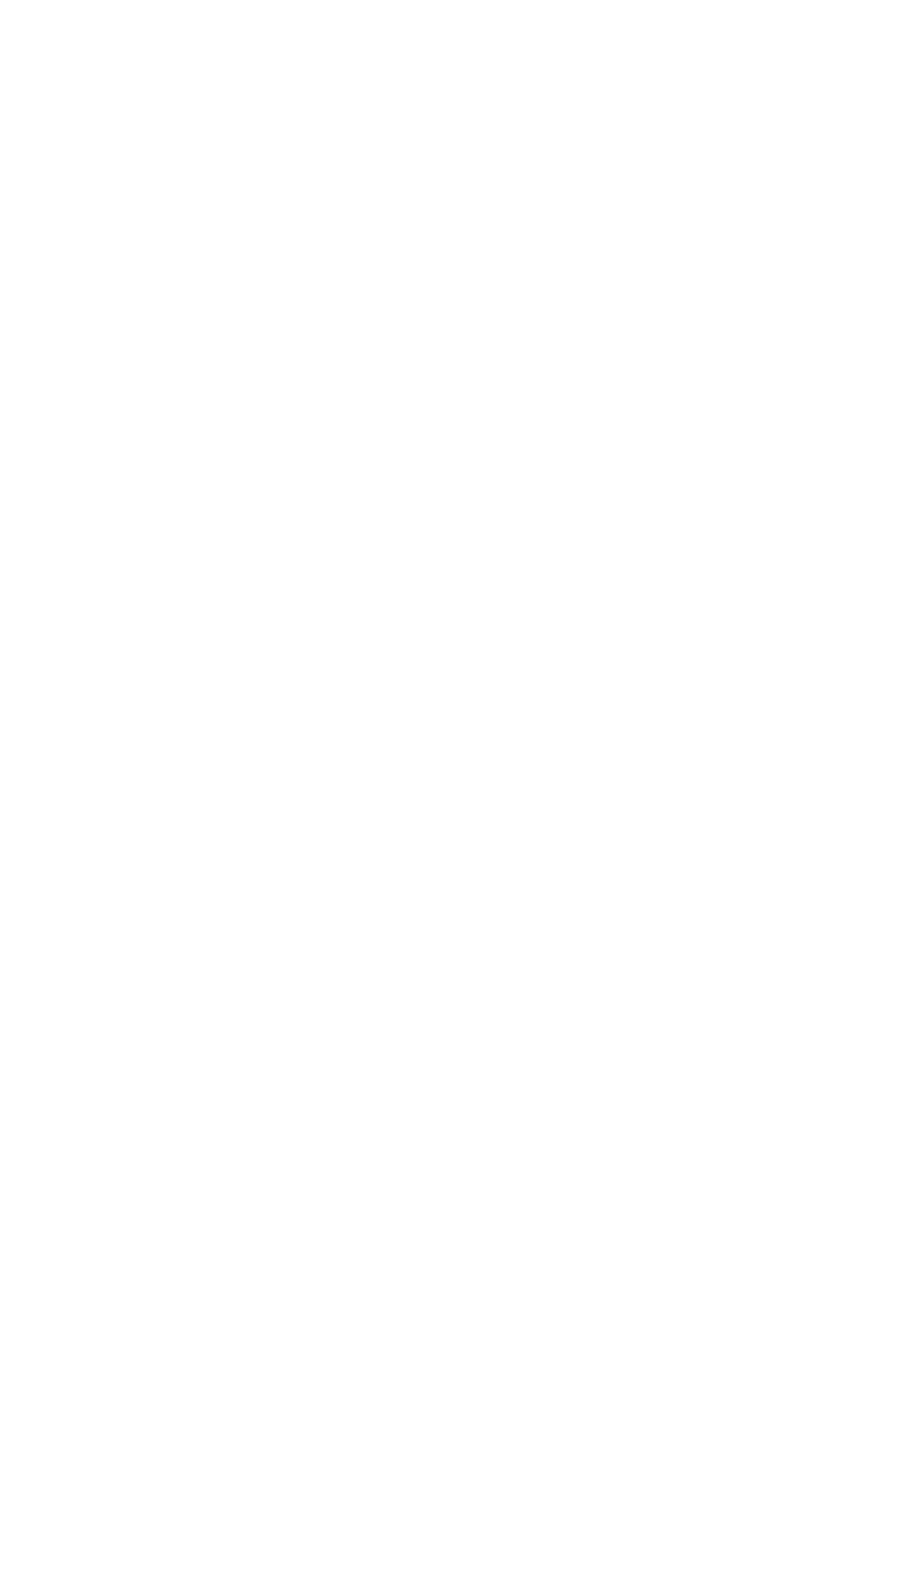 Oatly logo for dark backgrounds (transparent PNG)